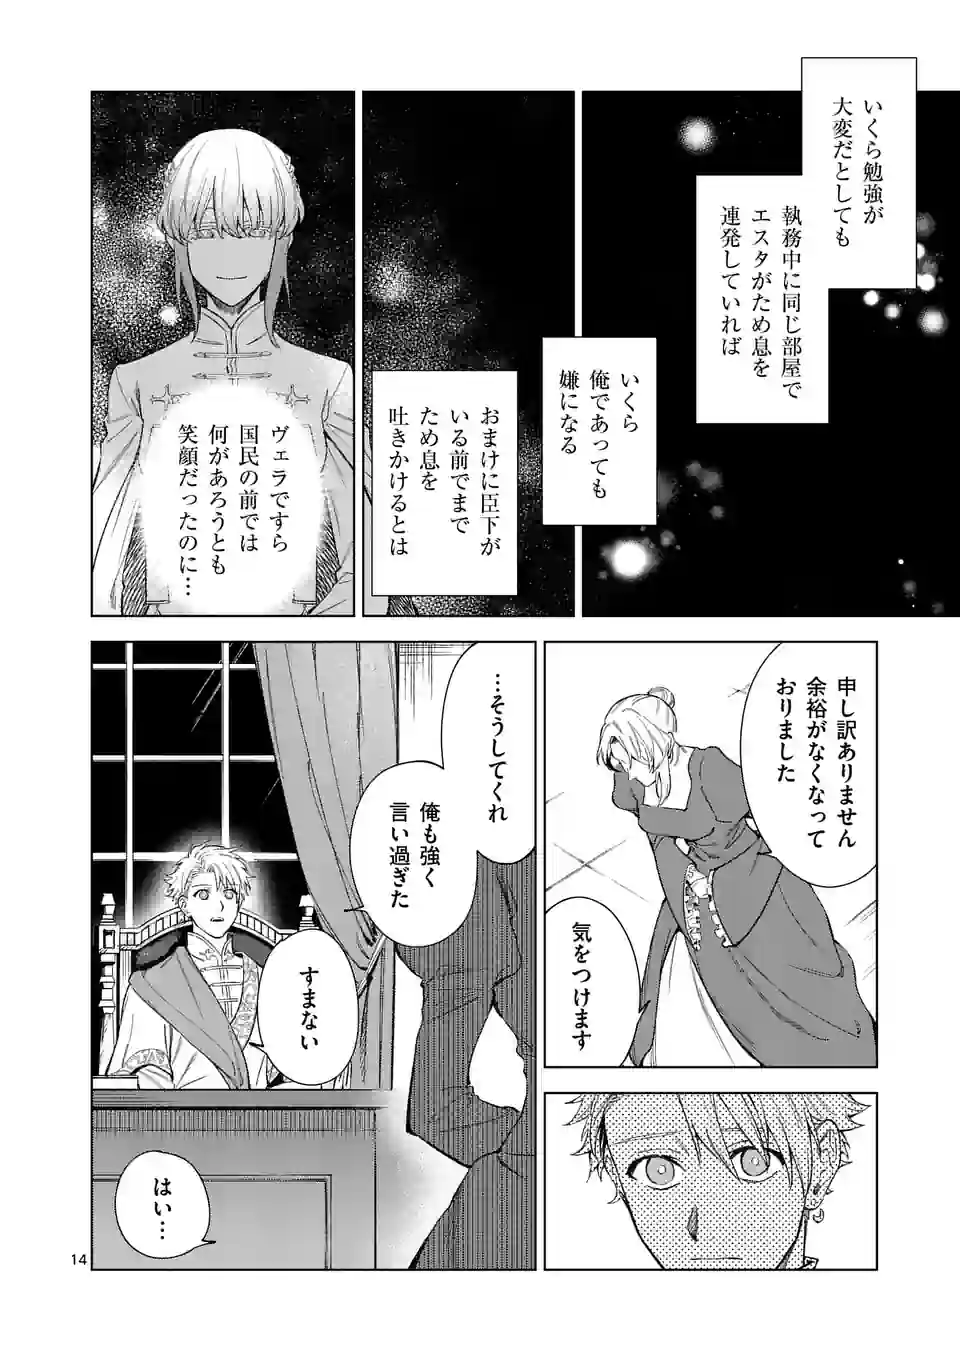 Mou Kyoumi ga Nai to Rikonsareta Reijou no Igai to Tanoshii Shinseikatsu - Chapter 5.5 - Page 2